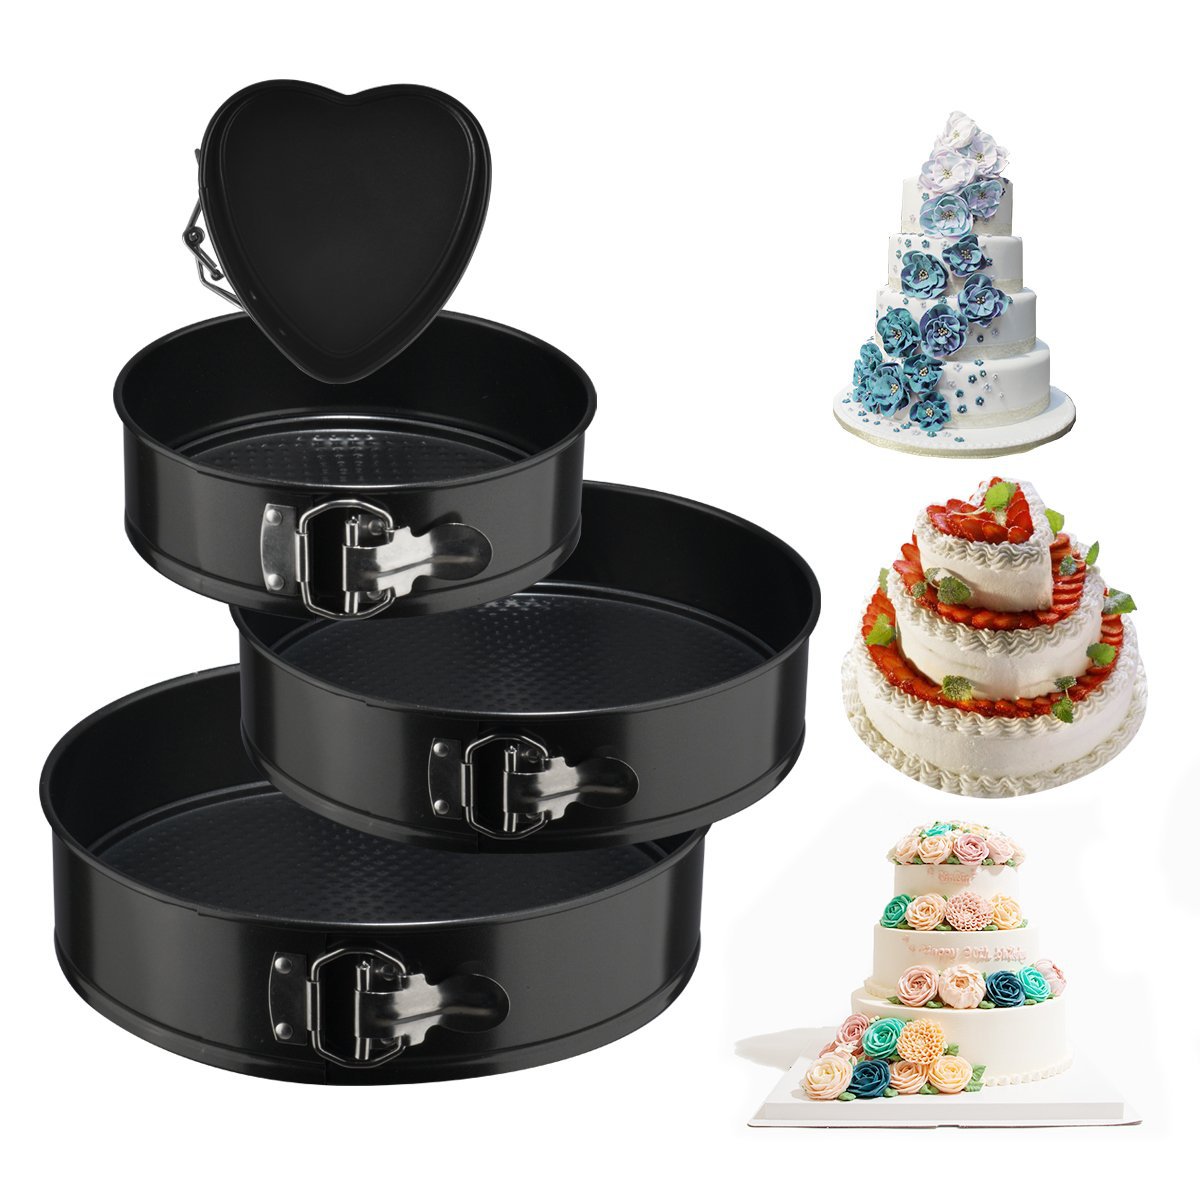 4Pcs/Set Non Stick Round Bake Tin Tray Cake Baking Tools Pan Bakeware for Kitchen black ZopiStyle